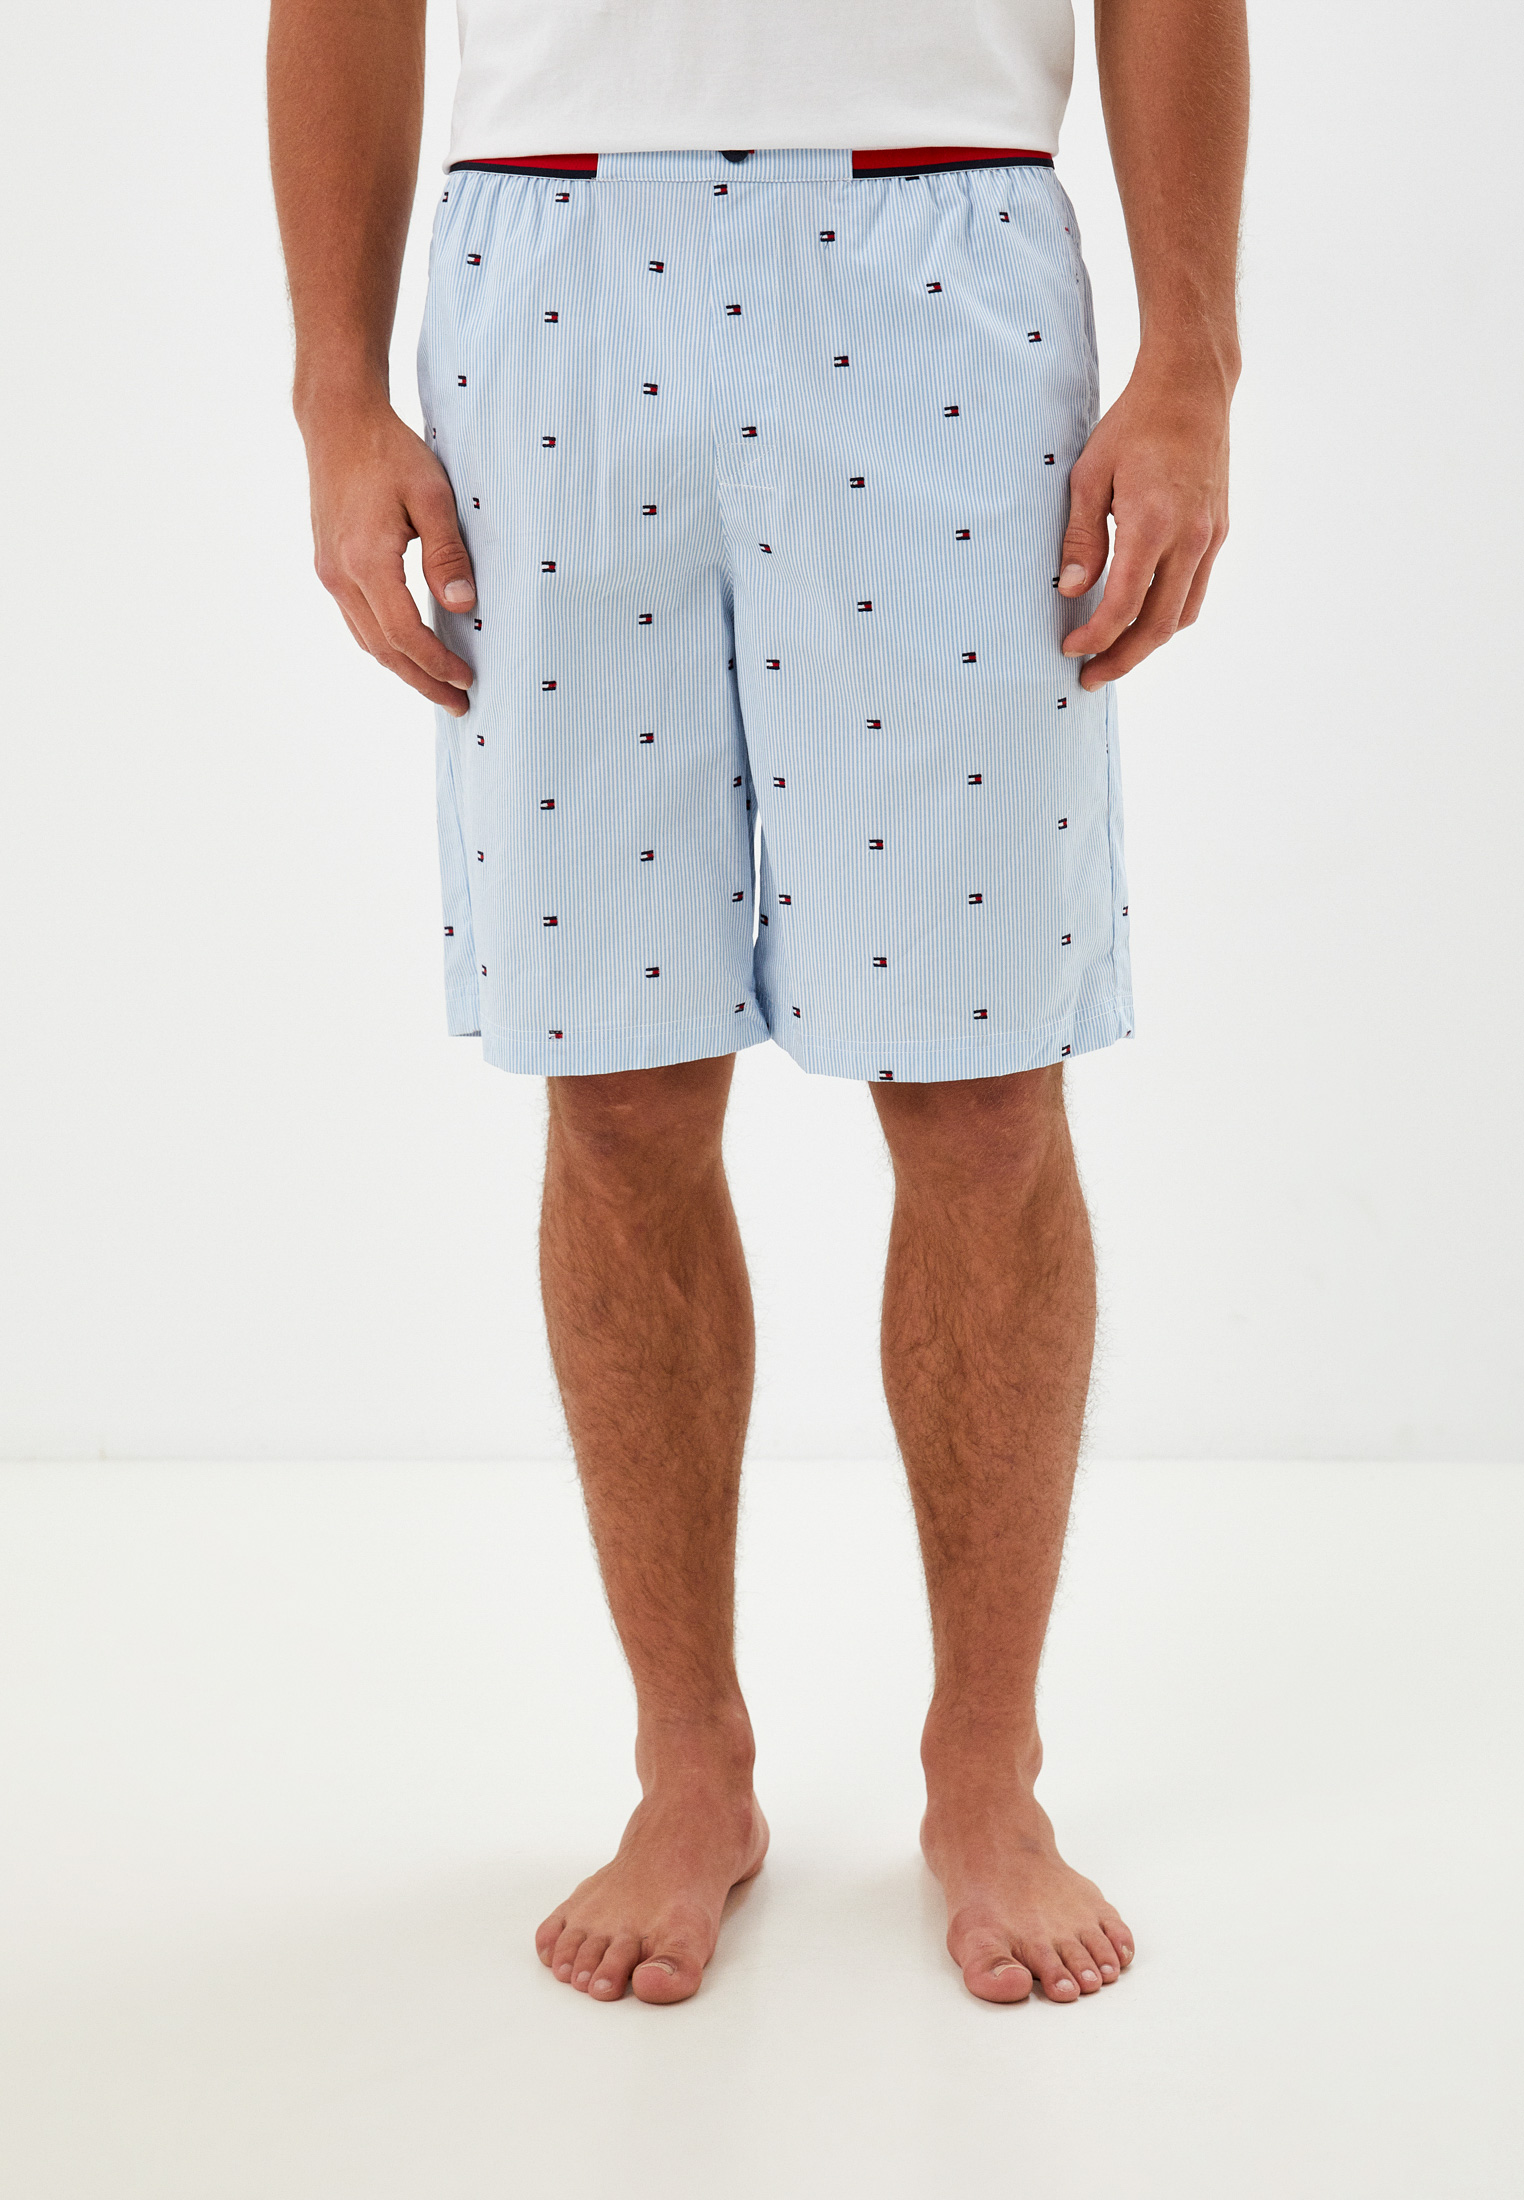 Мужские домашние брюки Tommy Hilfiger (Томми Хилфигер) UM0UM02158